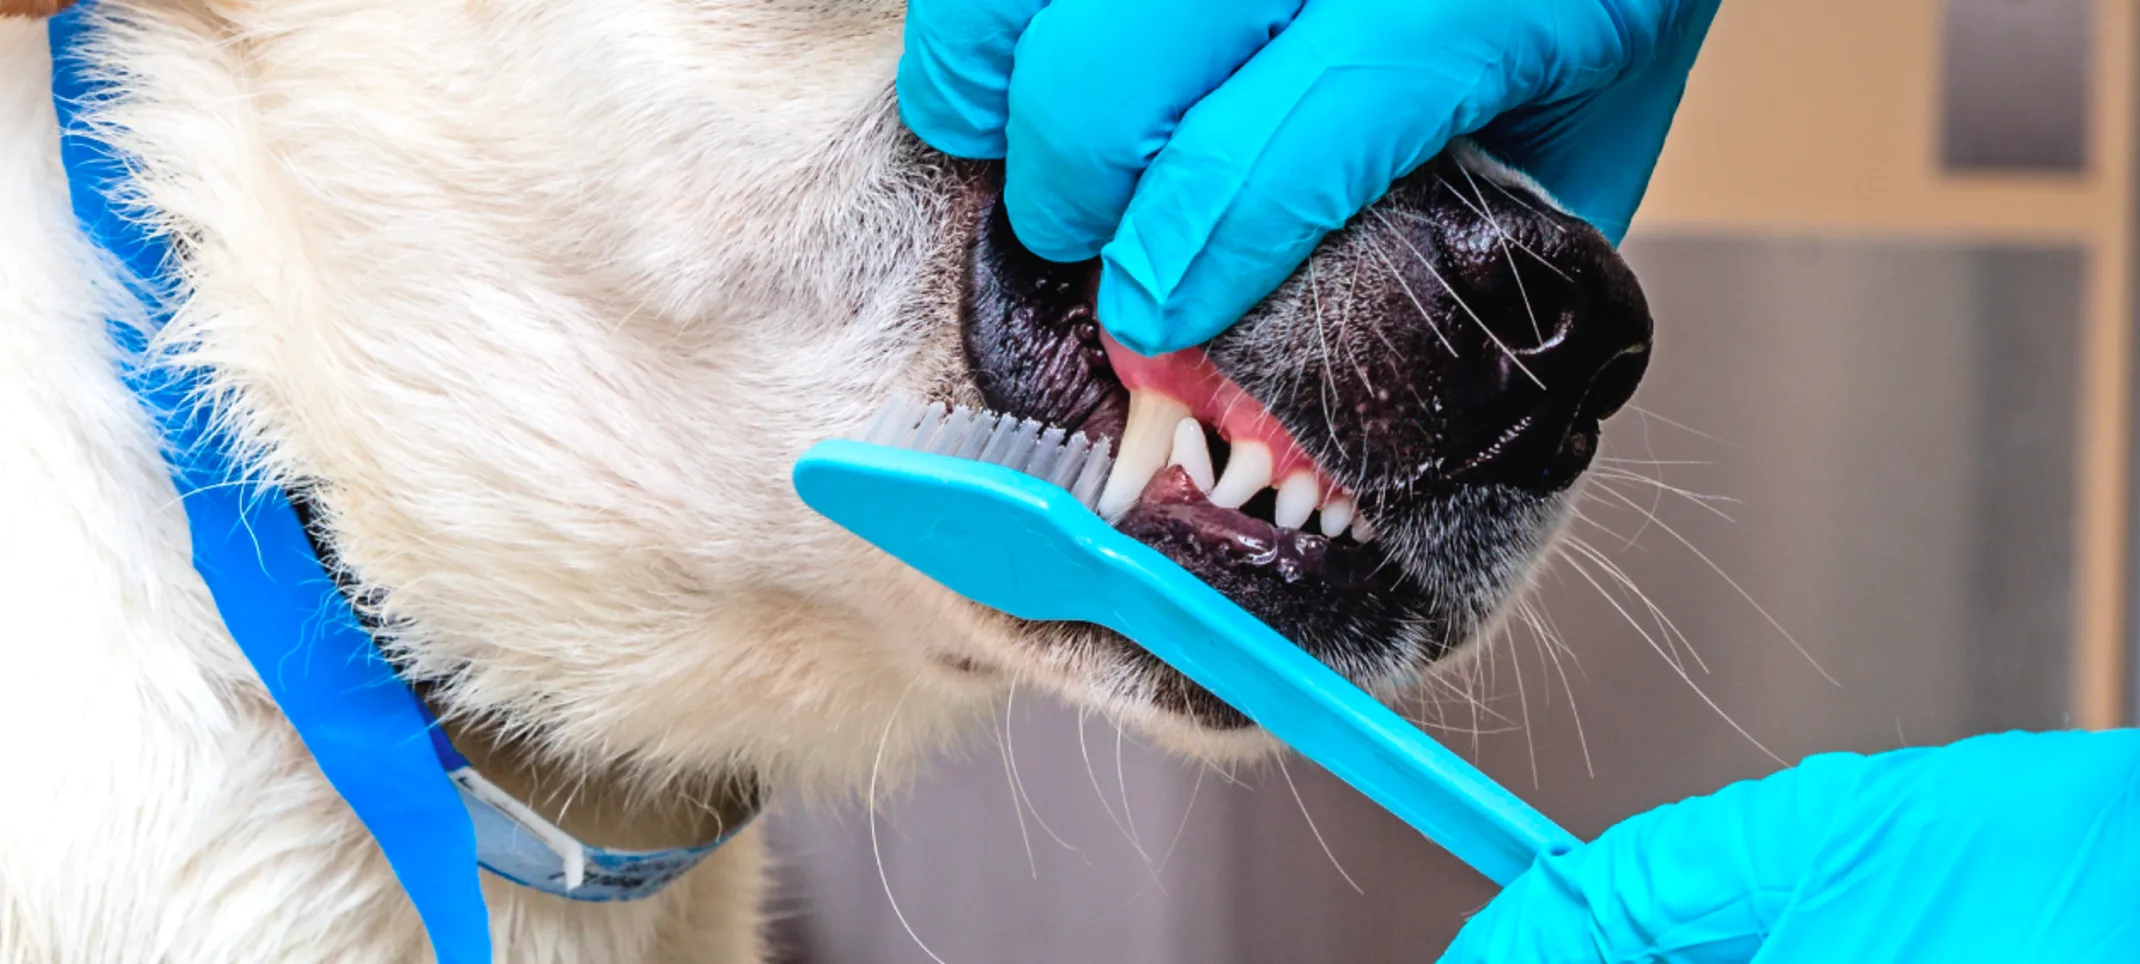 Dog getting dental work